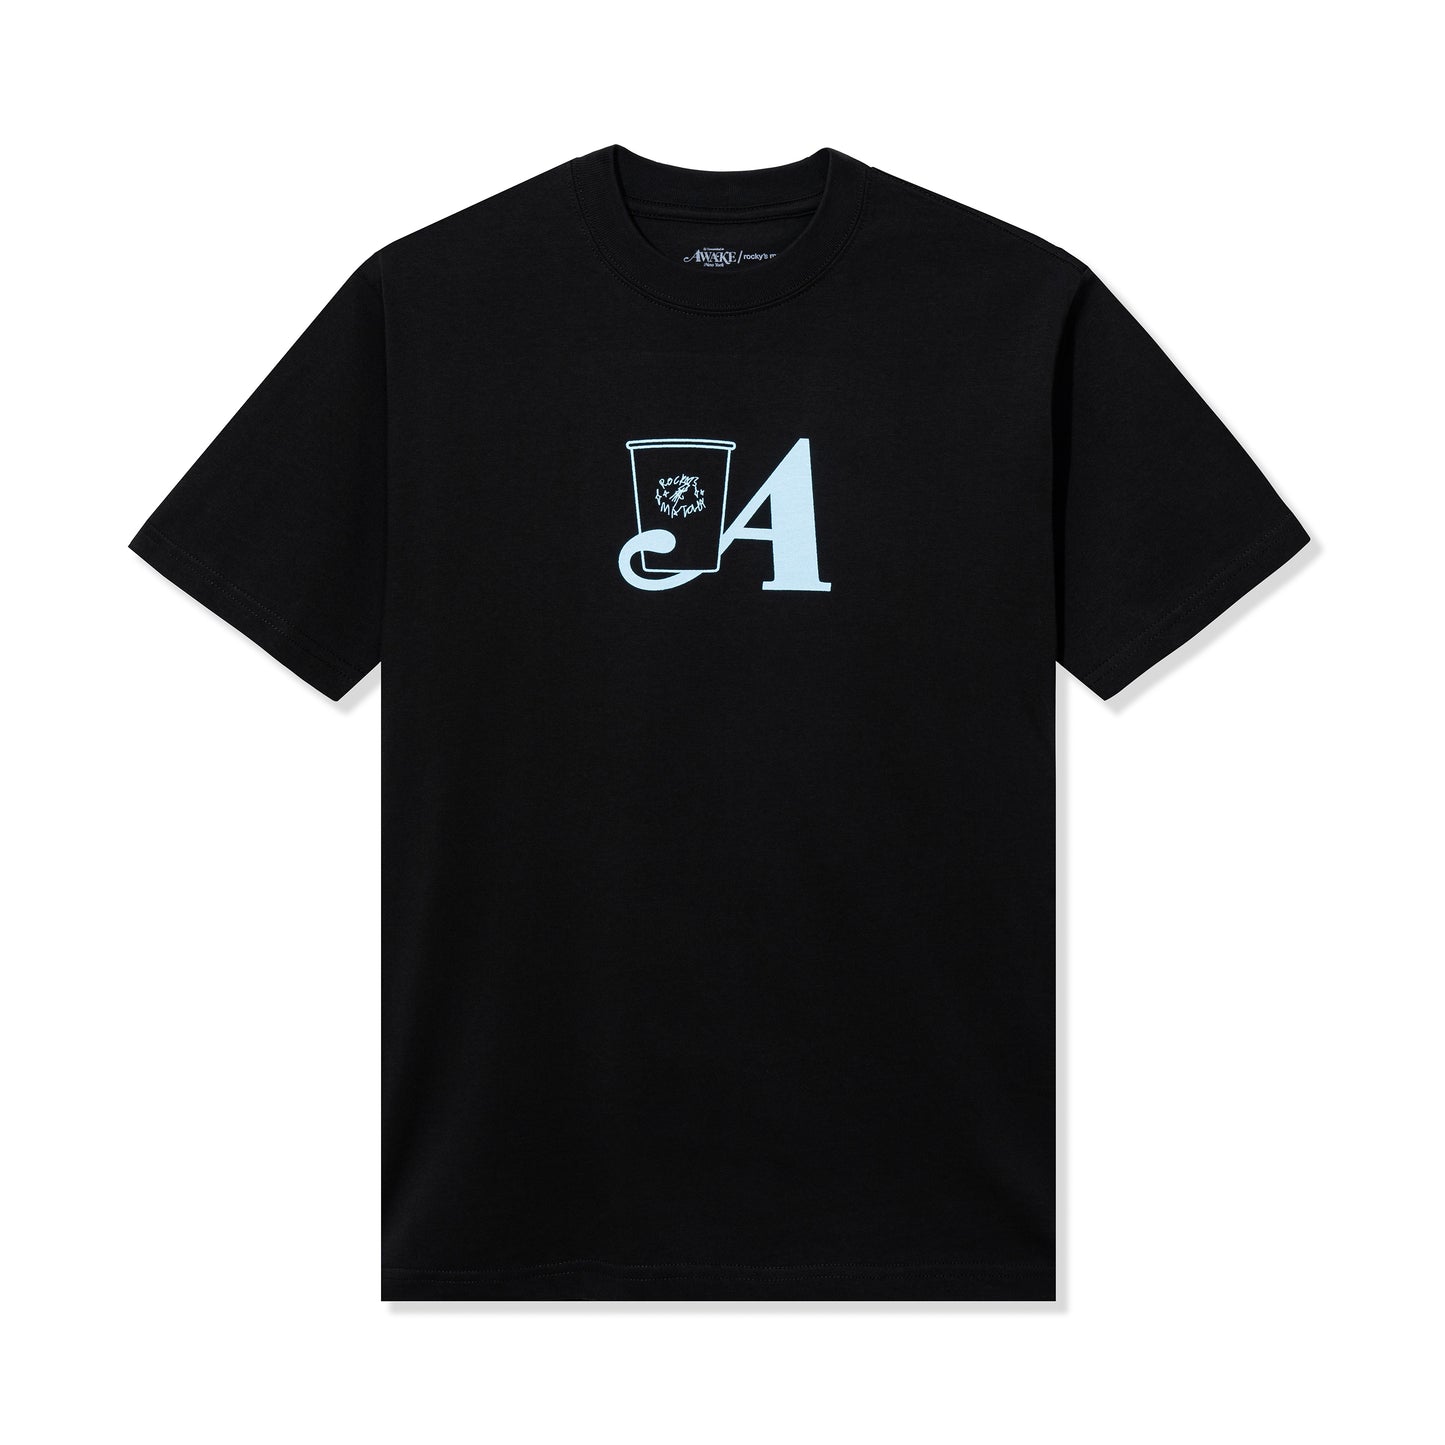 Rocky's Matcha & Awake NY T-Shirt - Black